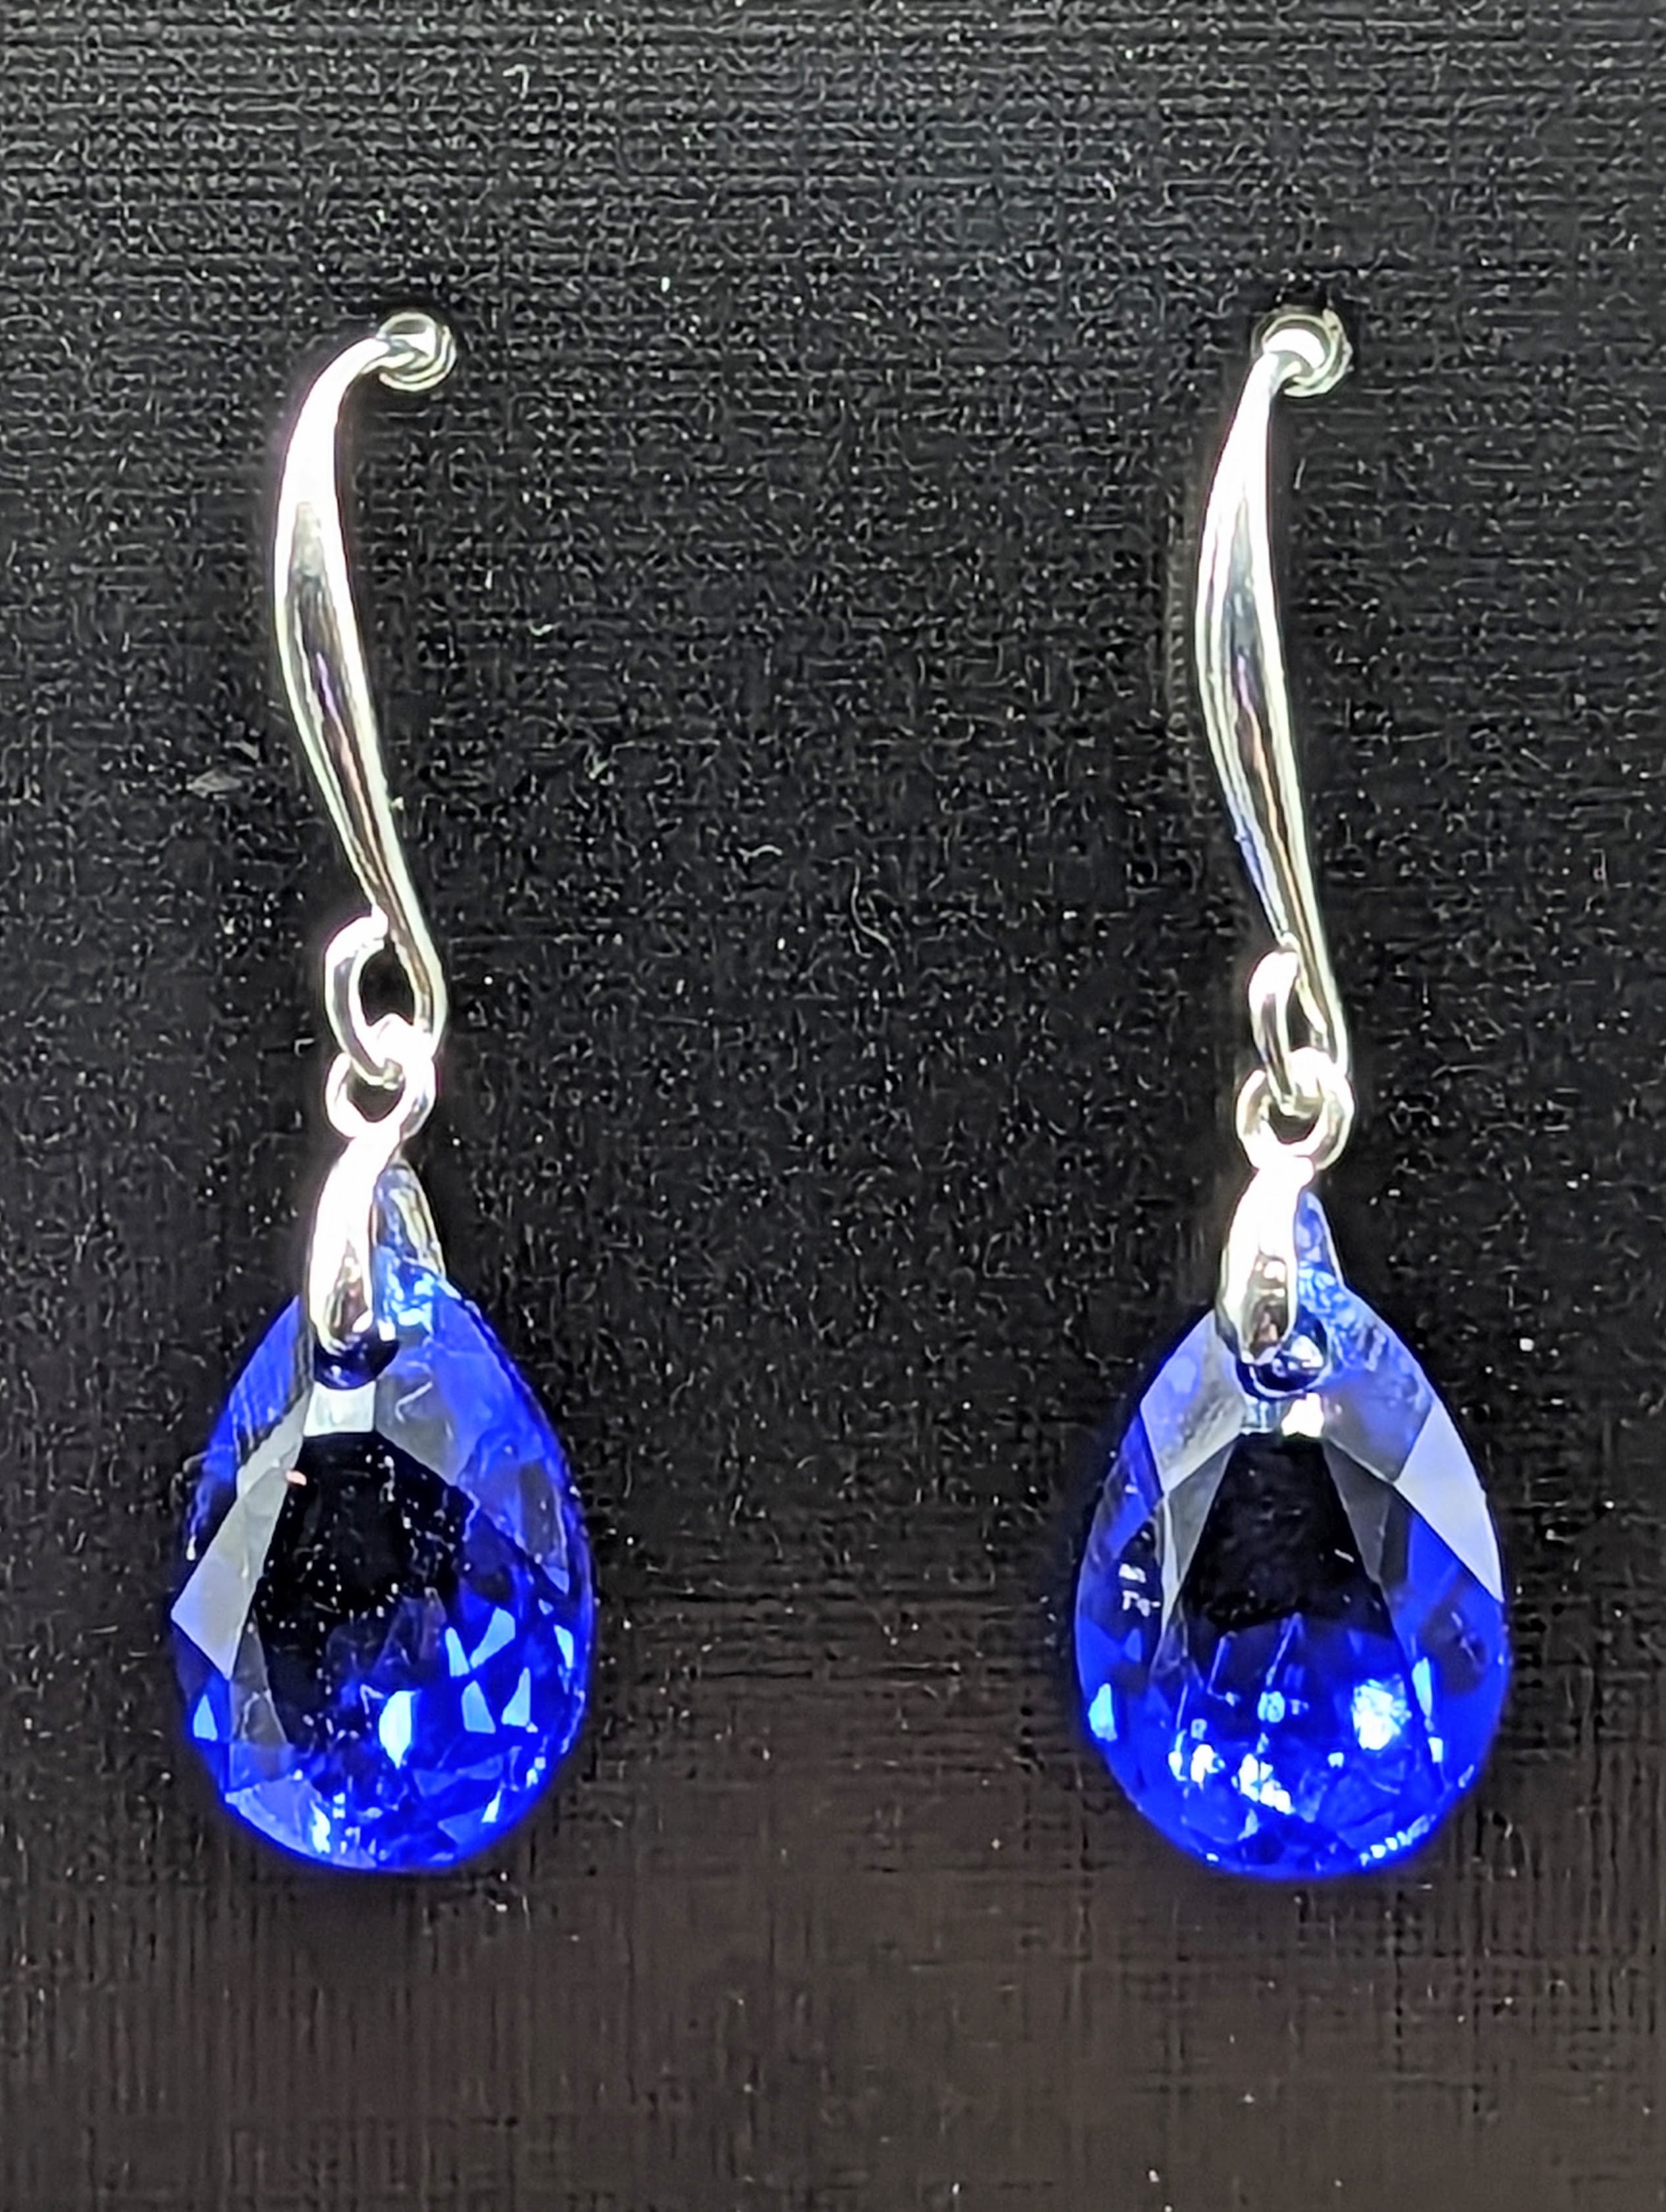 "Majestic Blue" Austrian Crystal Earrings on Sterling Silver